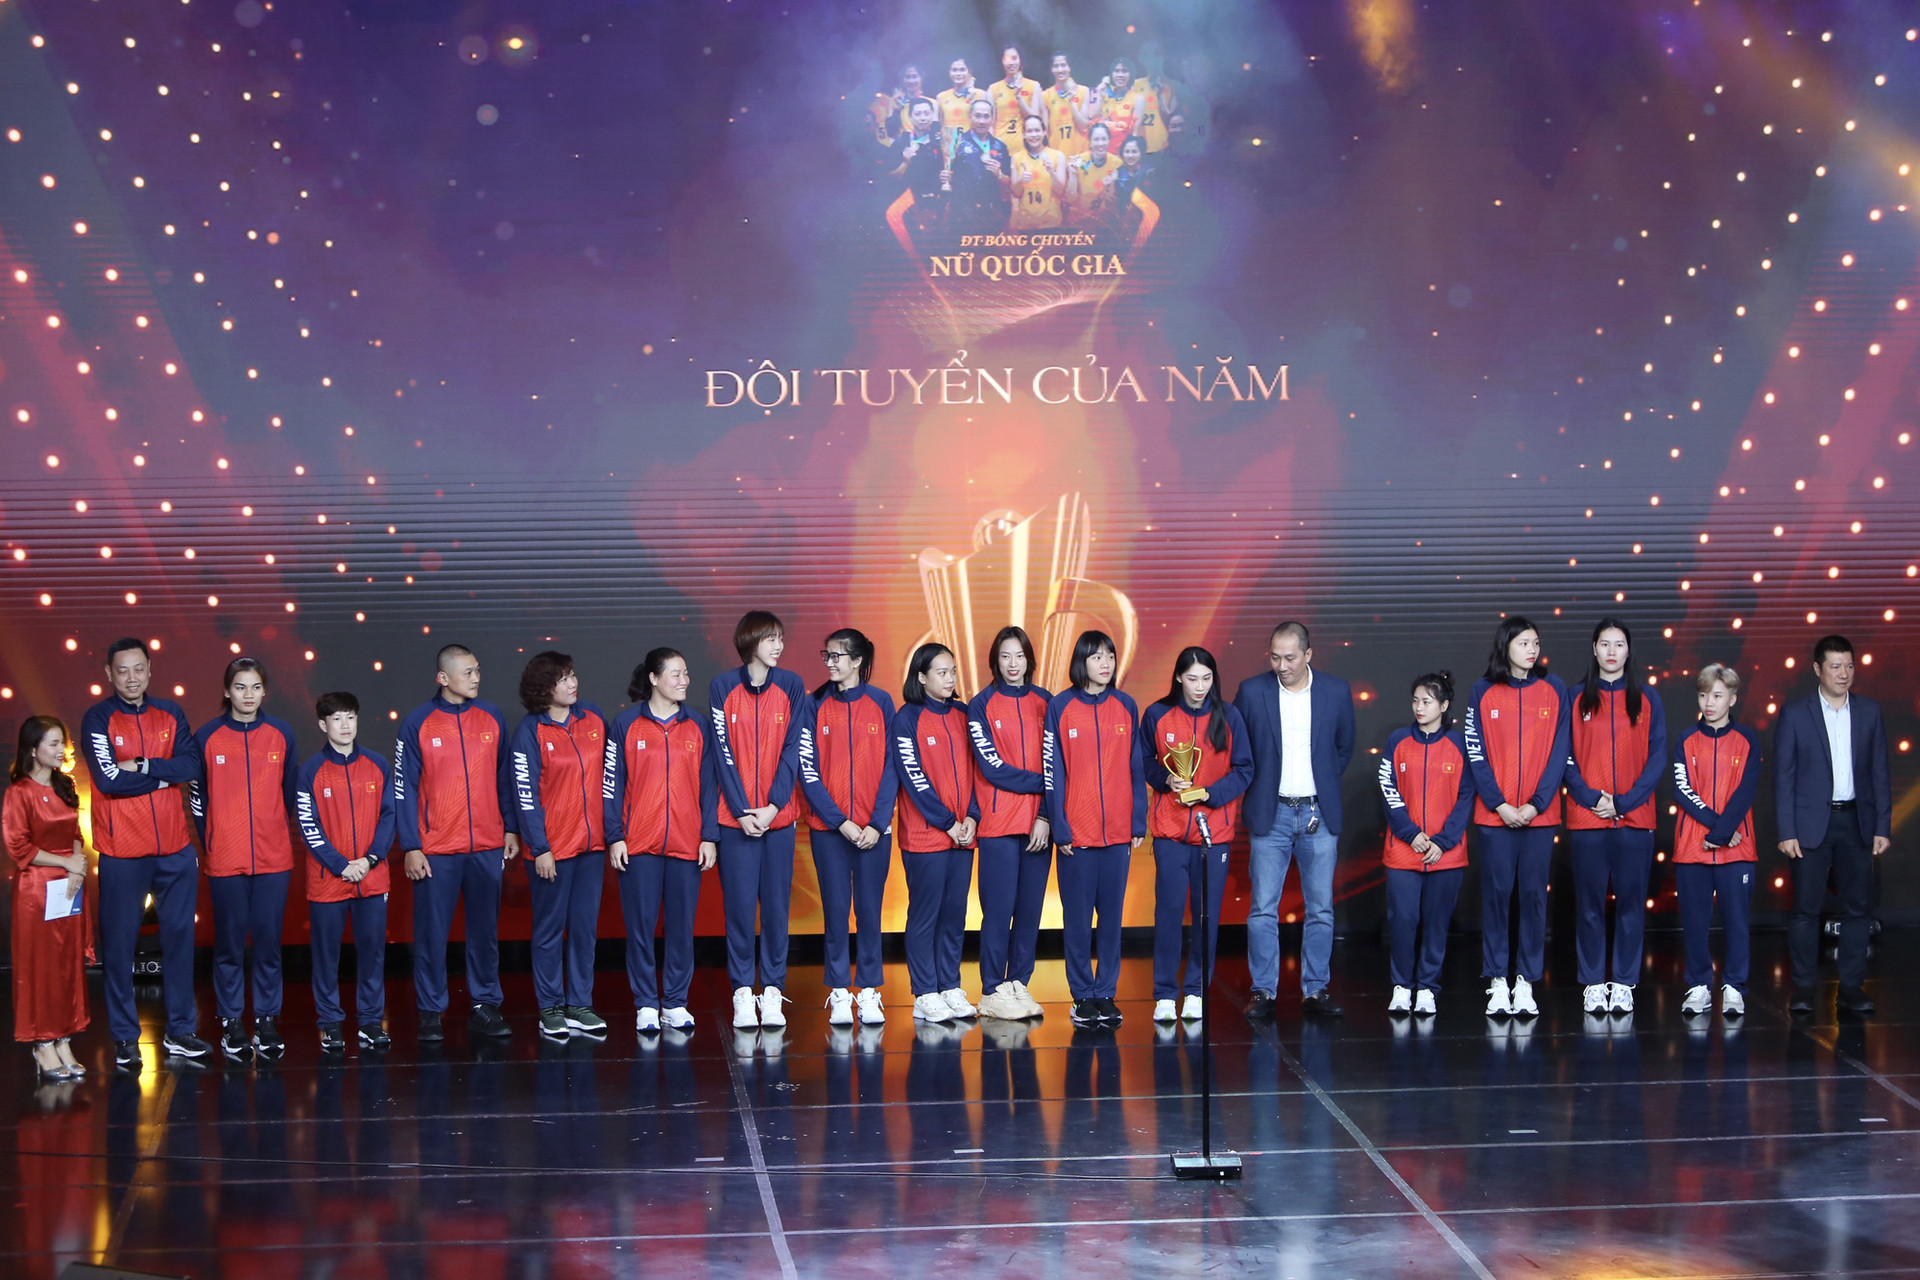 Đội tuyển bóng chuyền nữ Việt Nam giành giải Đội tuyển của năm tại Gala Cúp chiến thắng 2023 - Ảnh: HOÀNG TÙNG